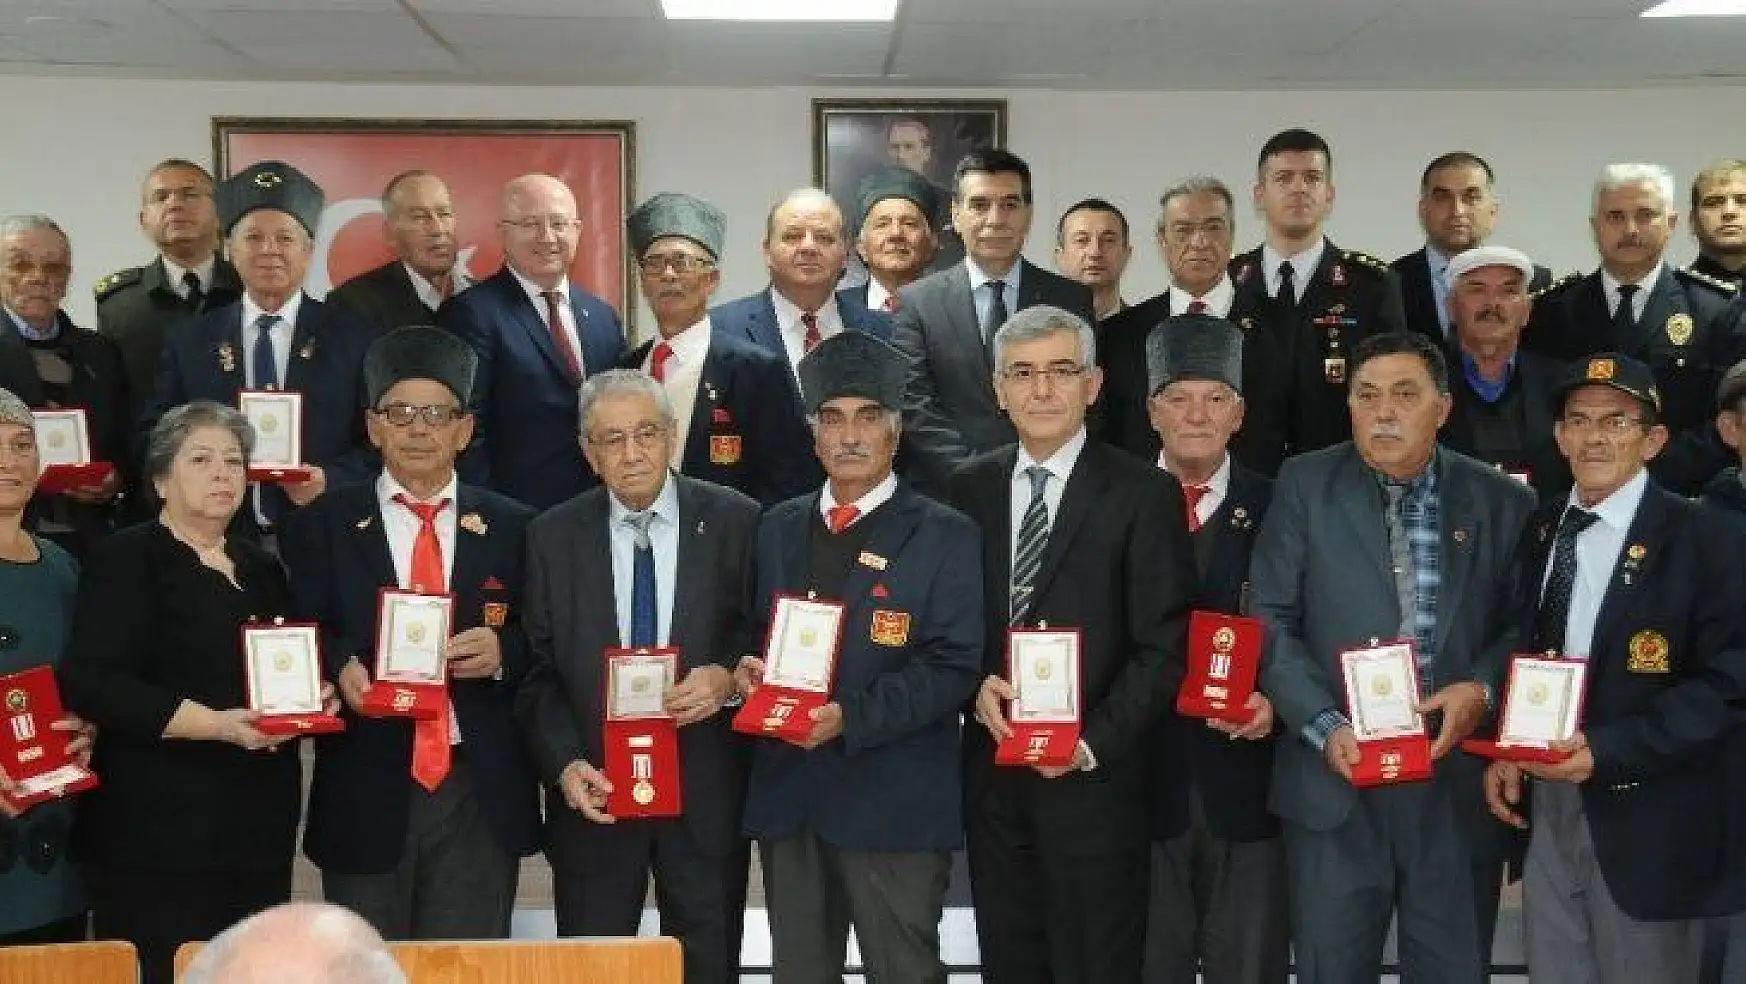 Menteşe'de 33 Kıbrıs gazisi onurlandırıldı